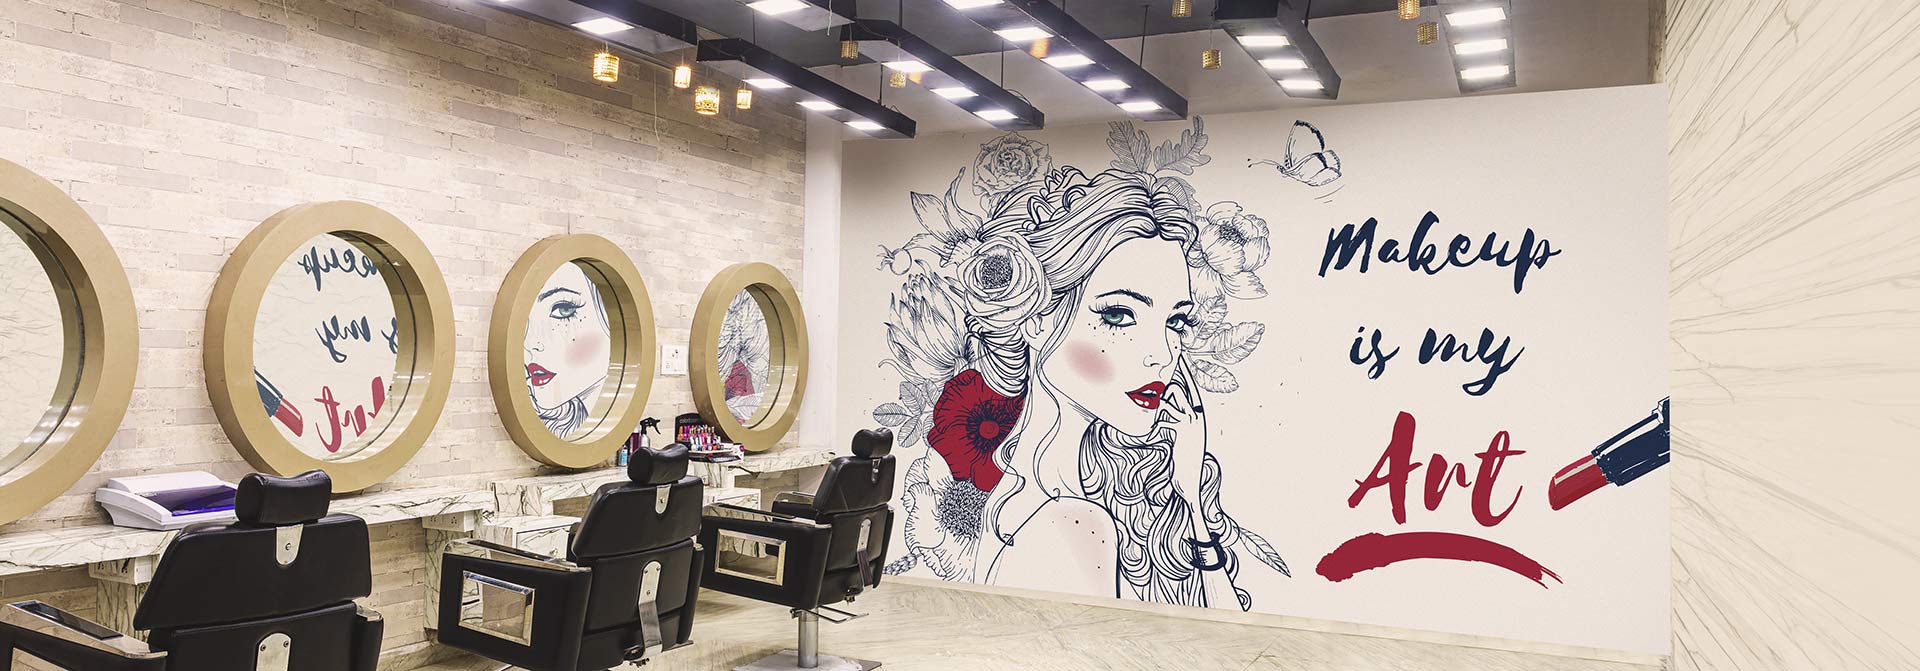 luxury style beauty salon interior design idea